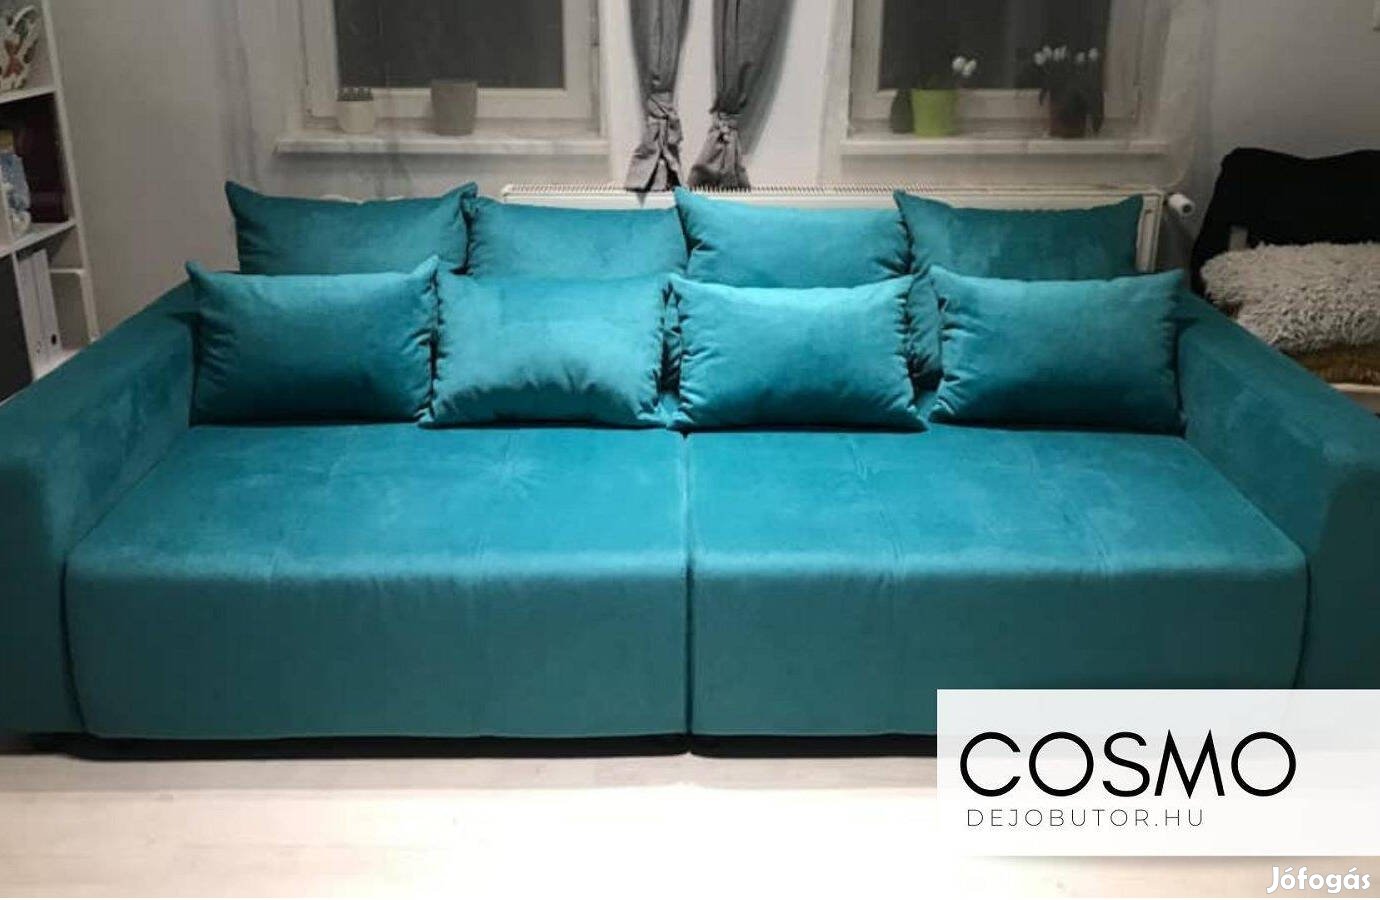 Cosmo kék kanapé ülőgarnitúra 290x140 cm ágyazható ágyneműtartós